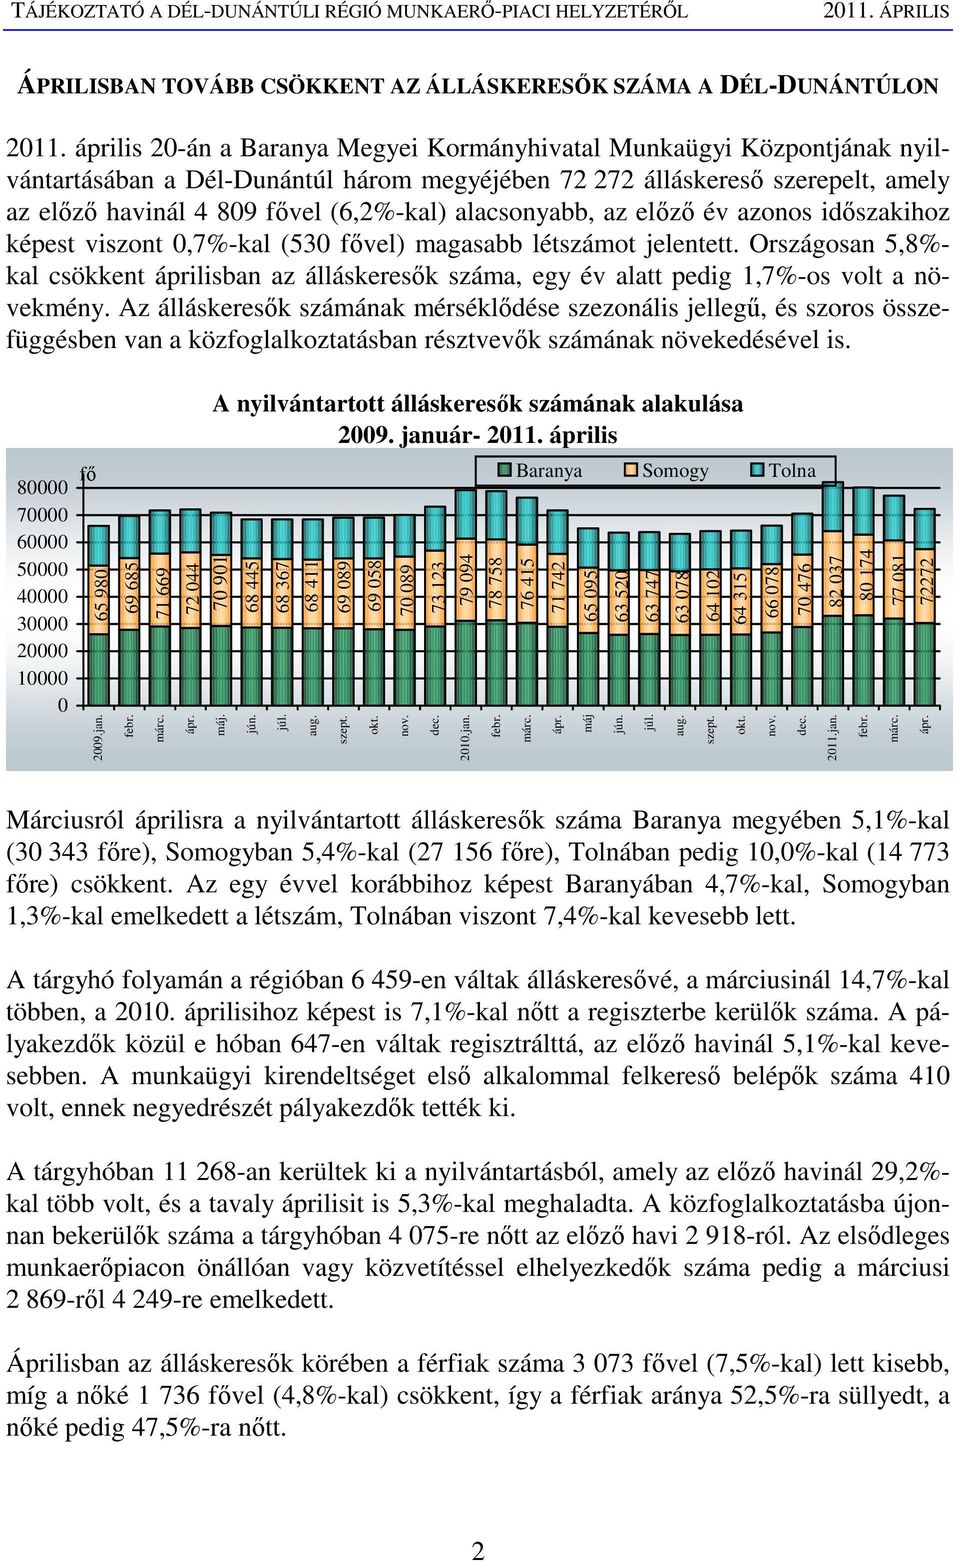 alacsonyabb, az elızı év azonos idıszakihoz képest viszont 0,7%-kal (530 fıvel) magasabb létszámot jelentett.